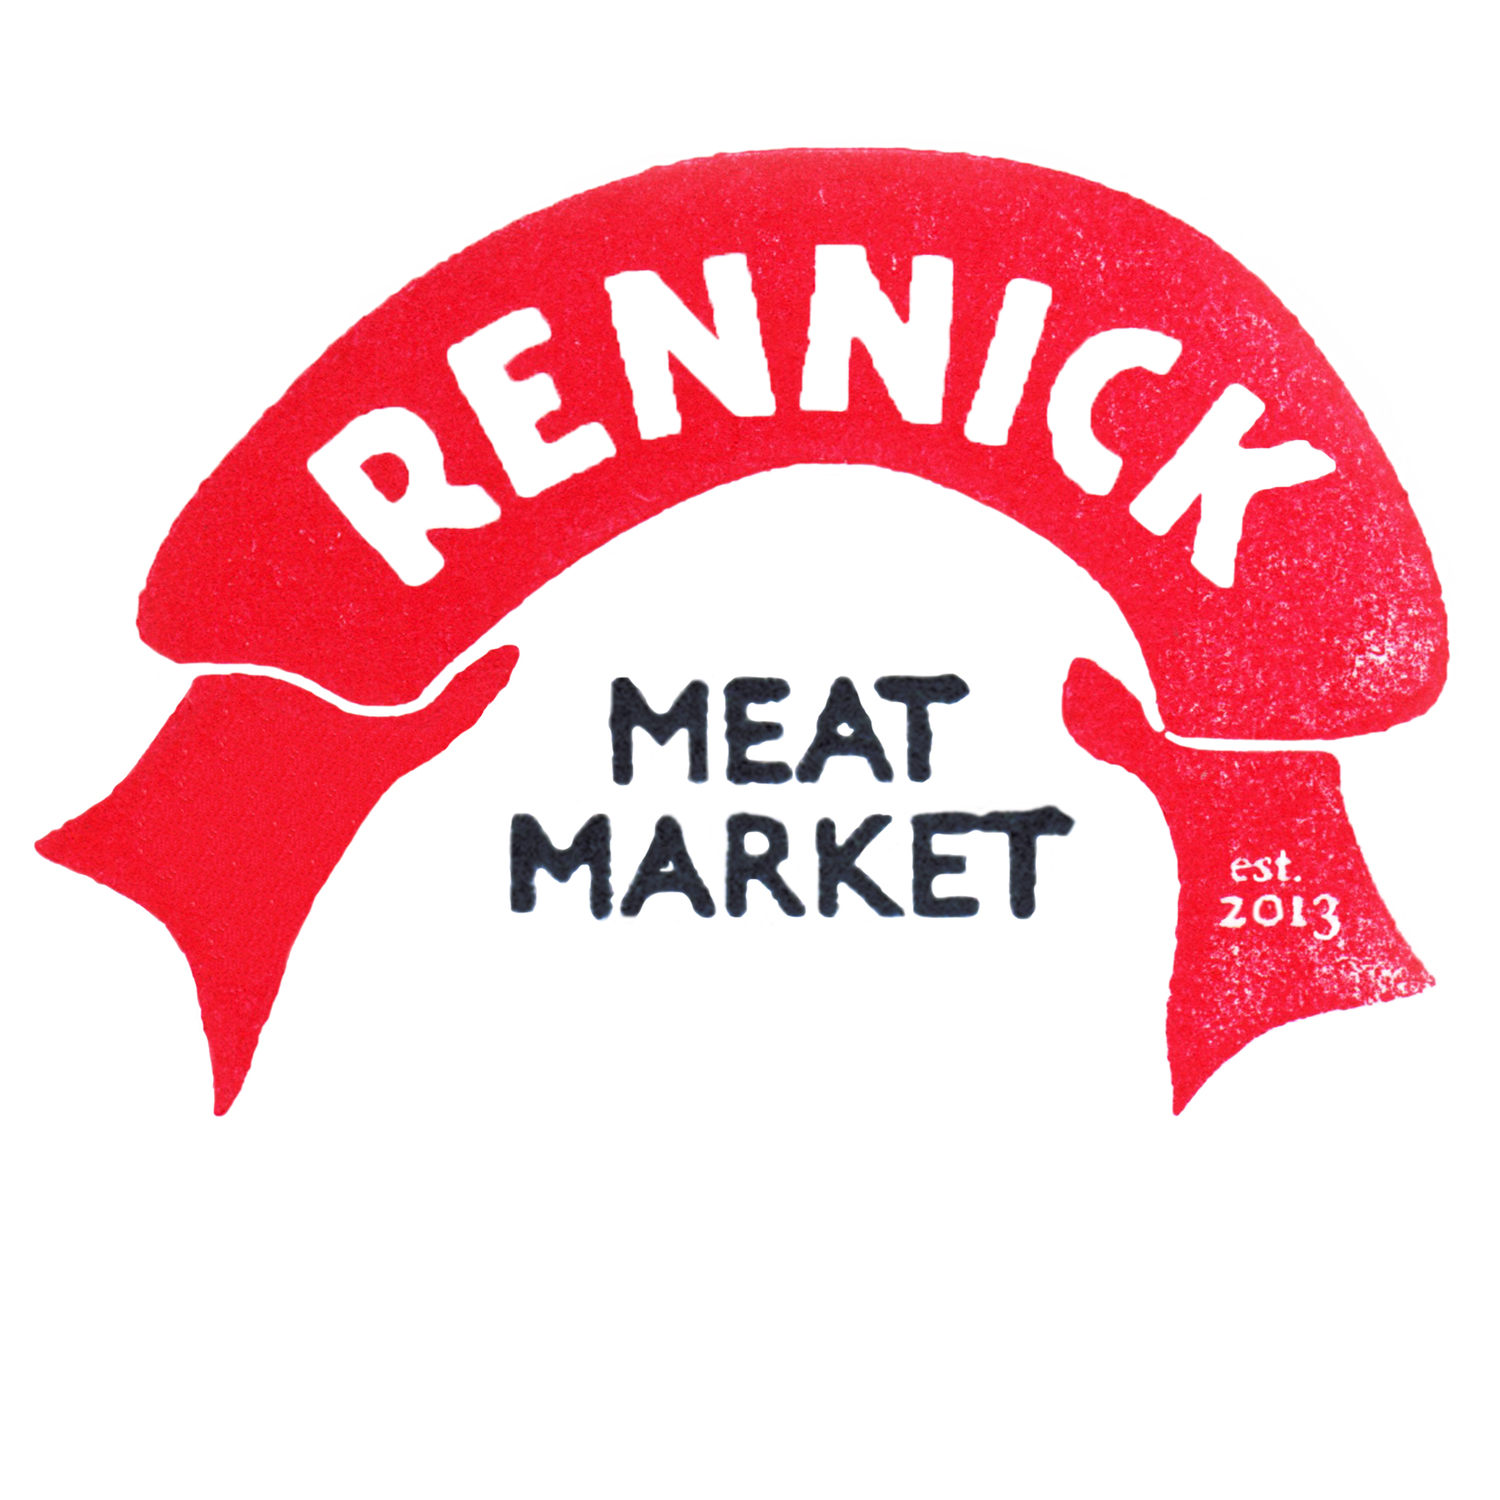 Rennick Meat Market